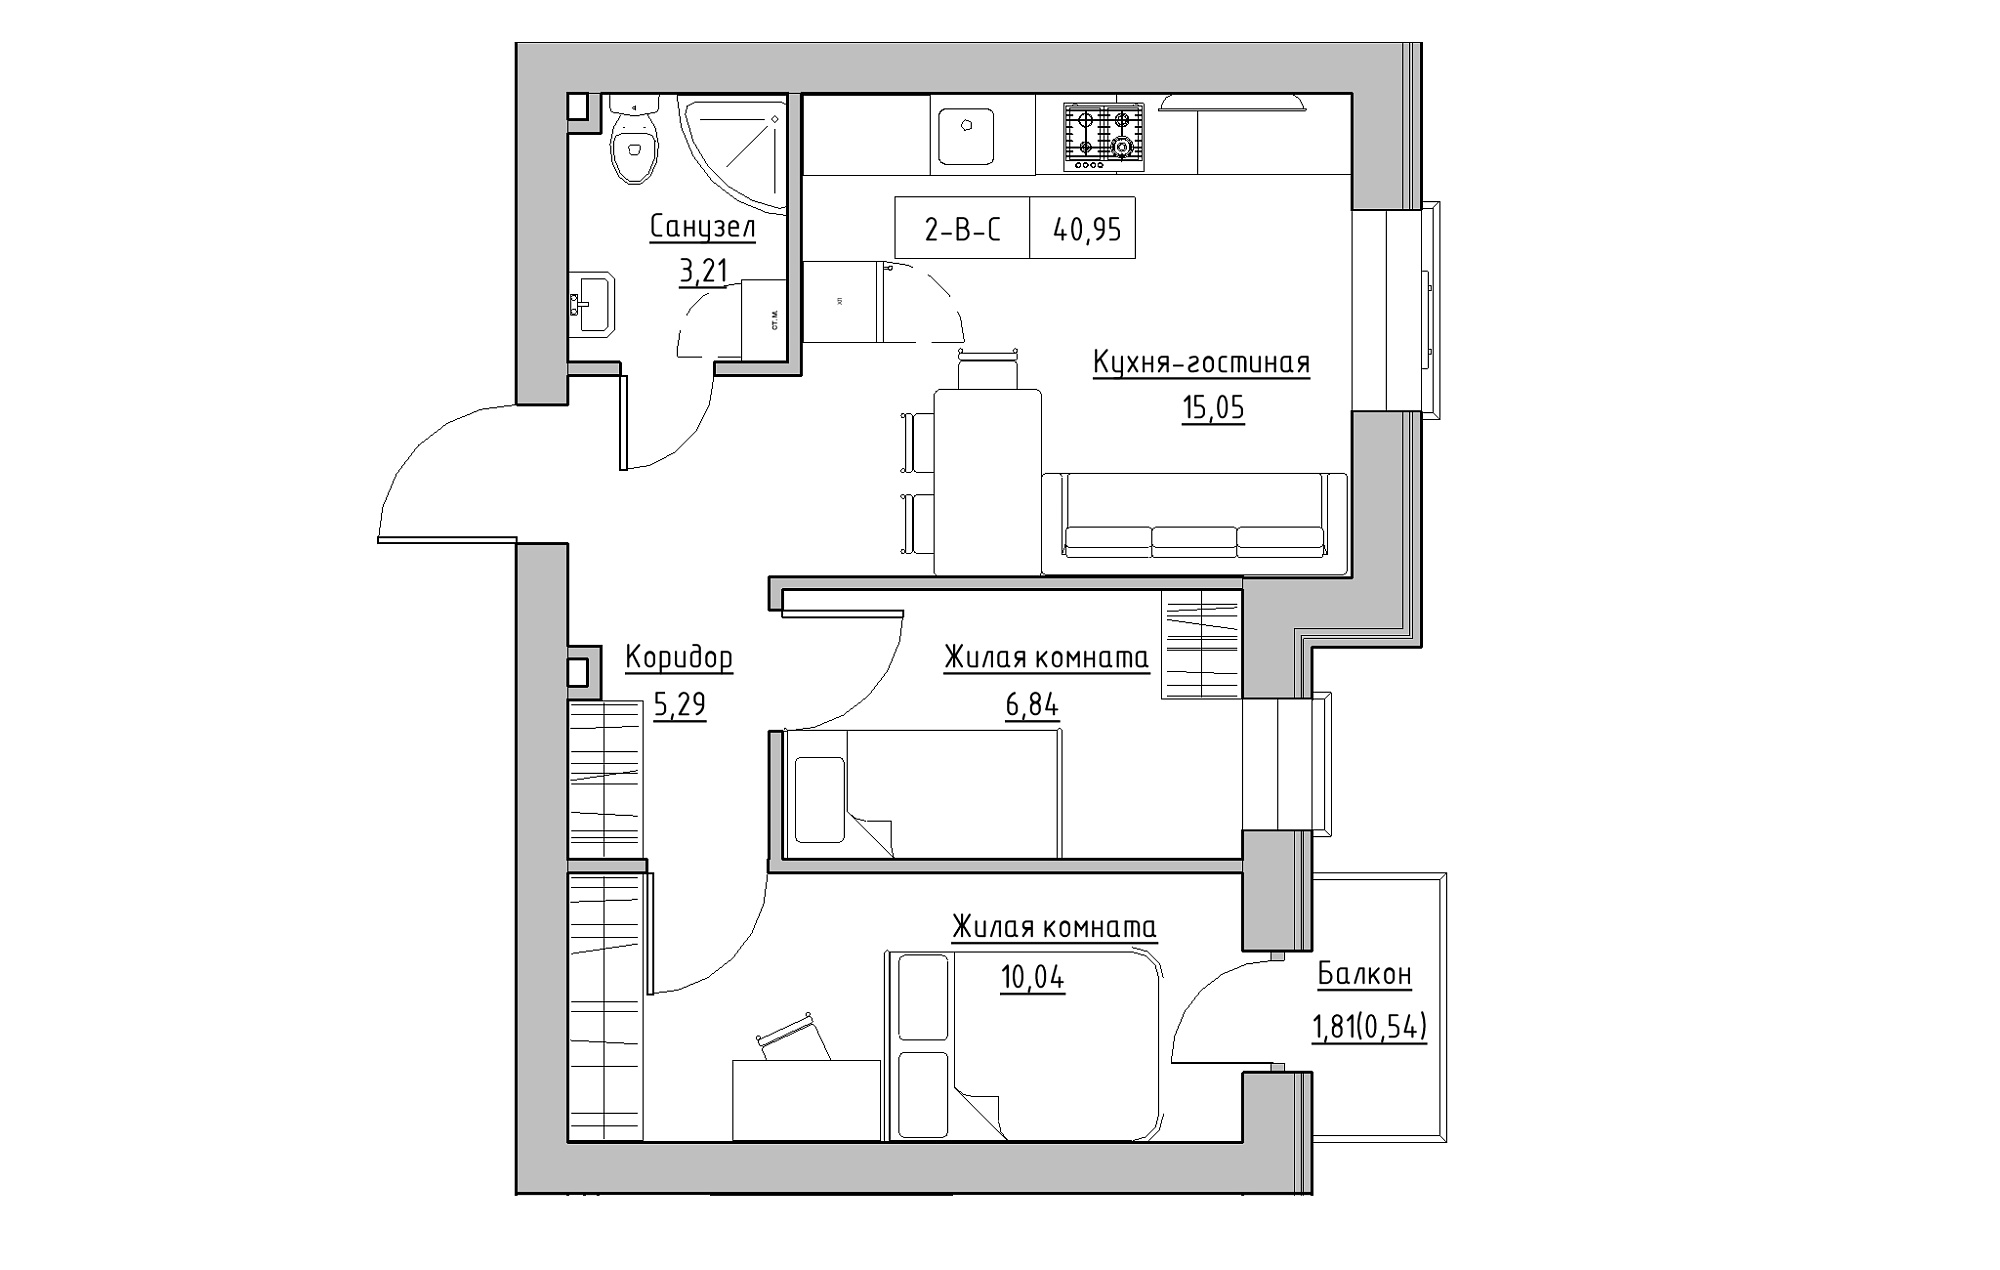 Планування 2-к квартира площею 40.95м2, KS-018-04/0010.